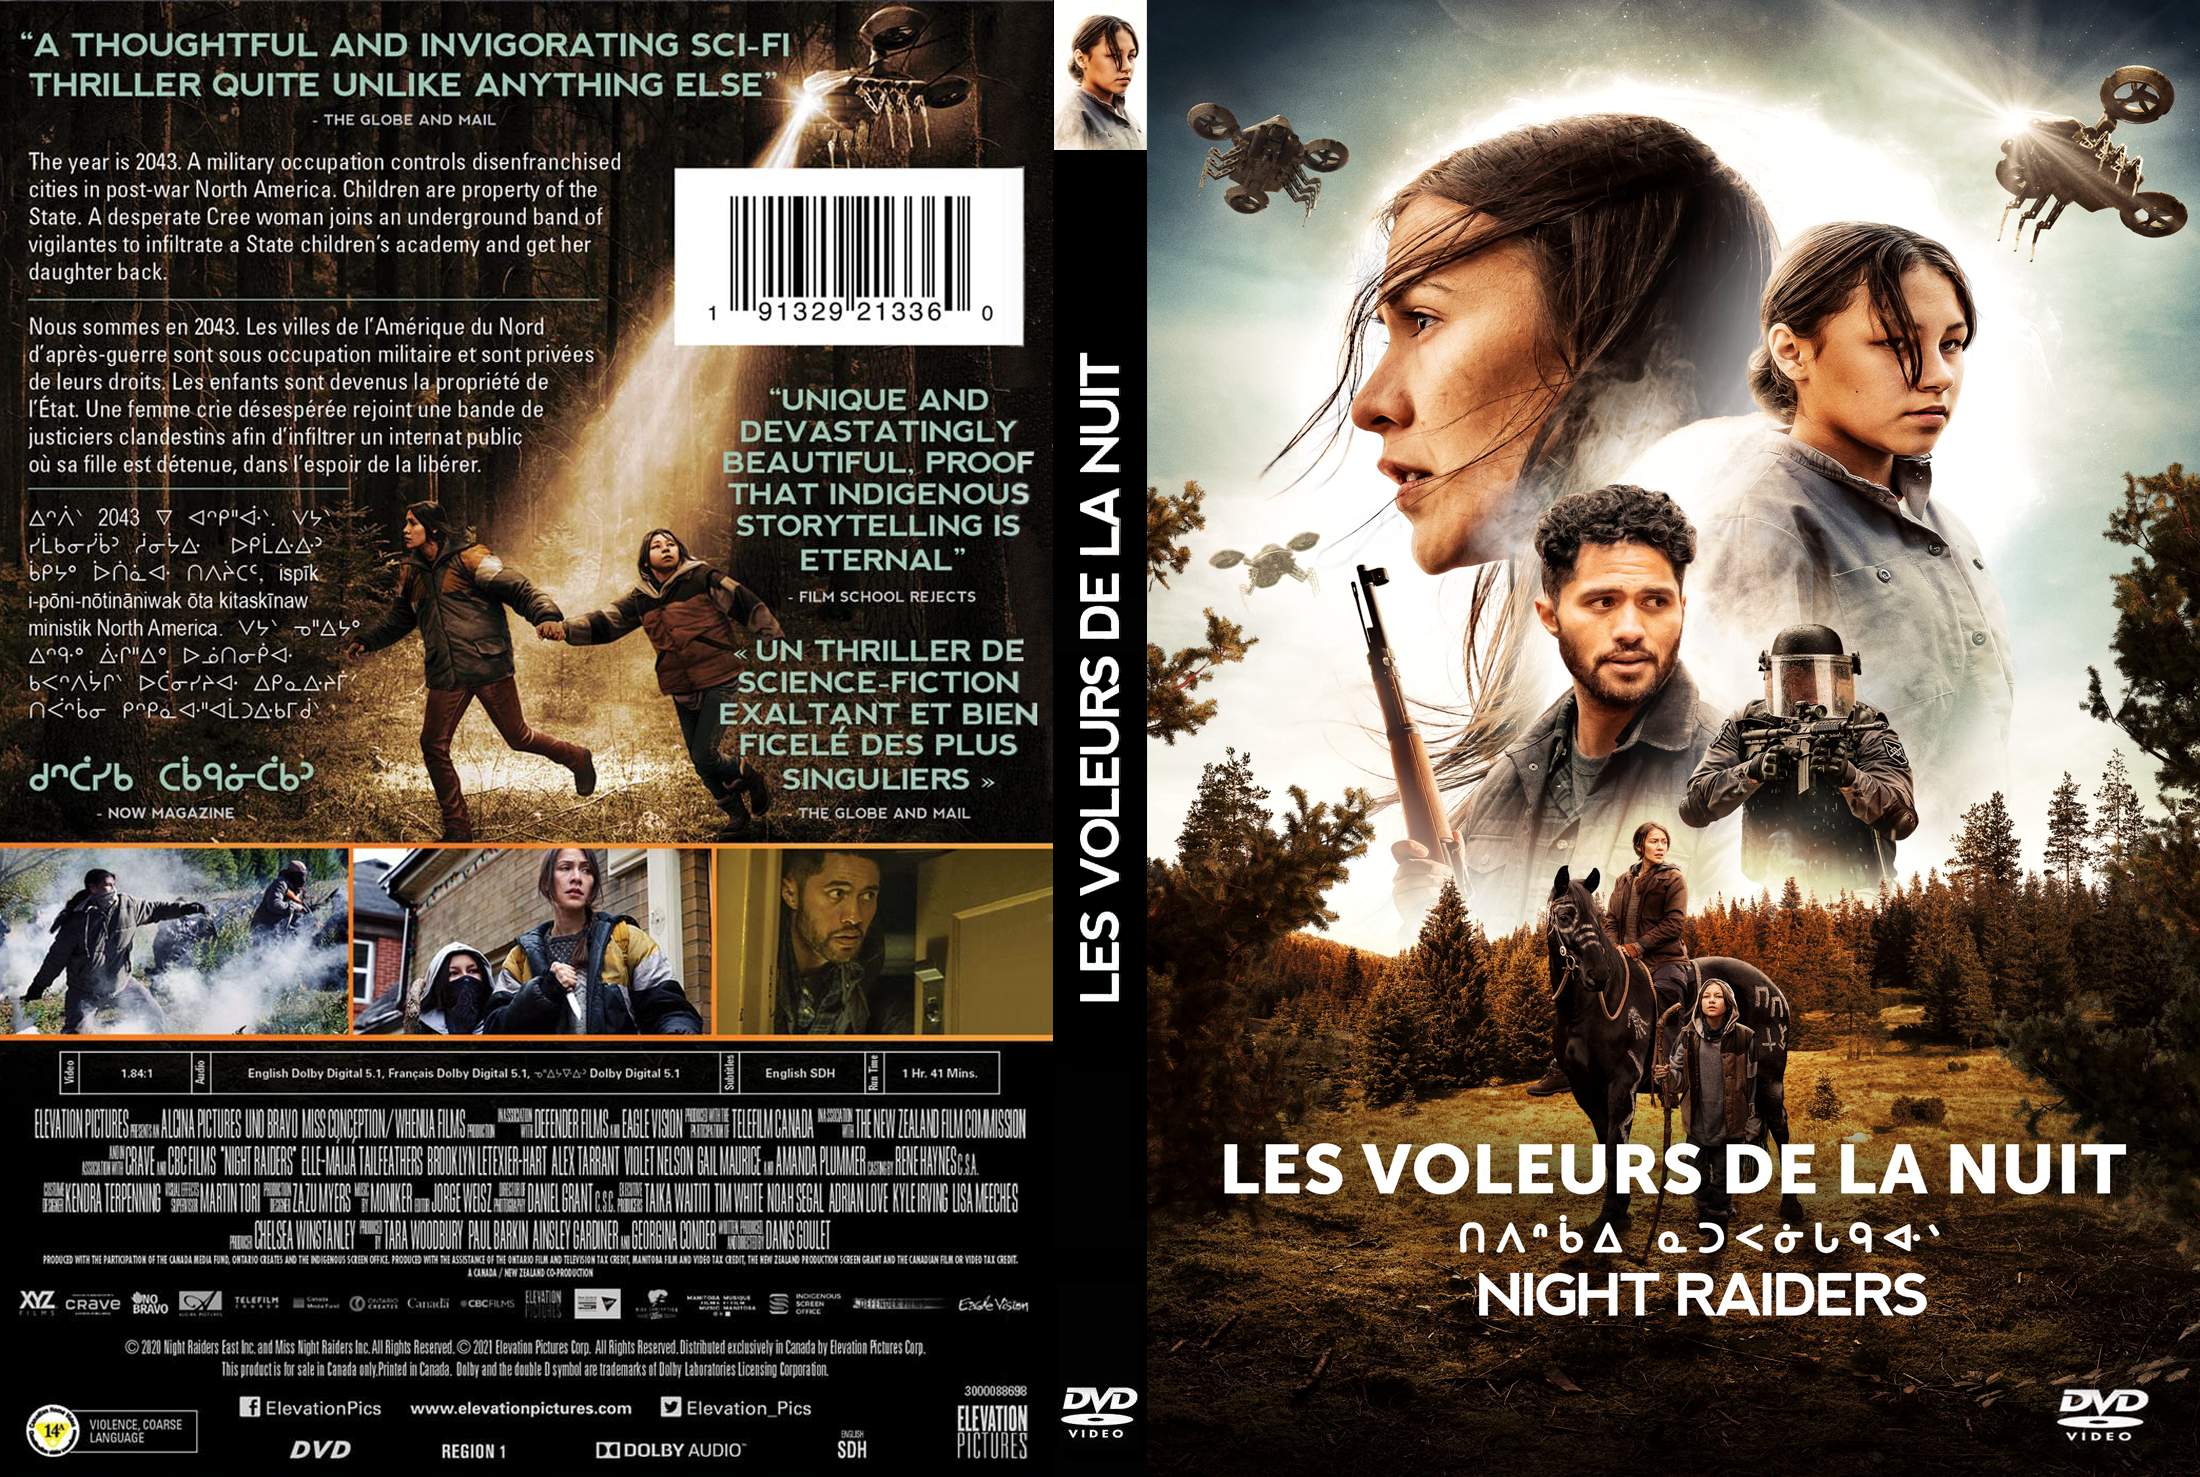 Jaquette DVD Les Voleurs de la nuit